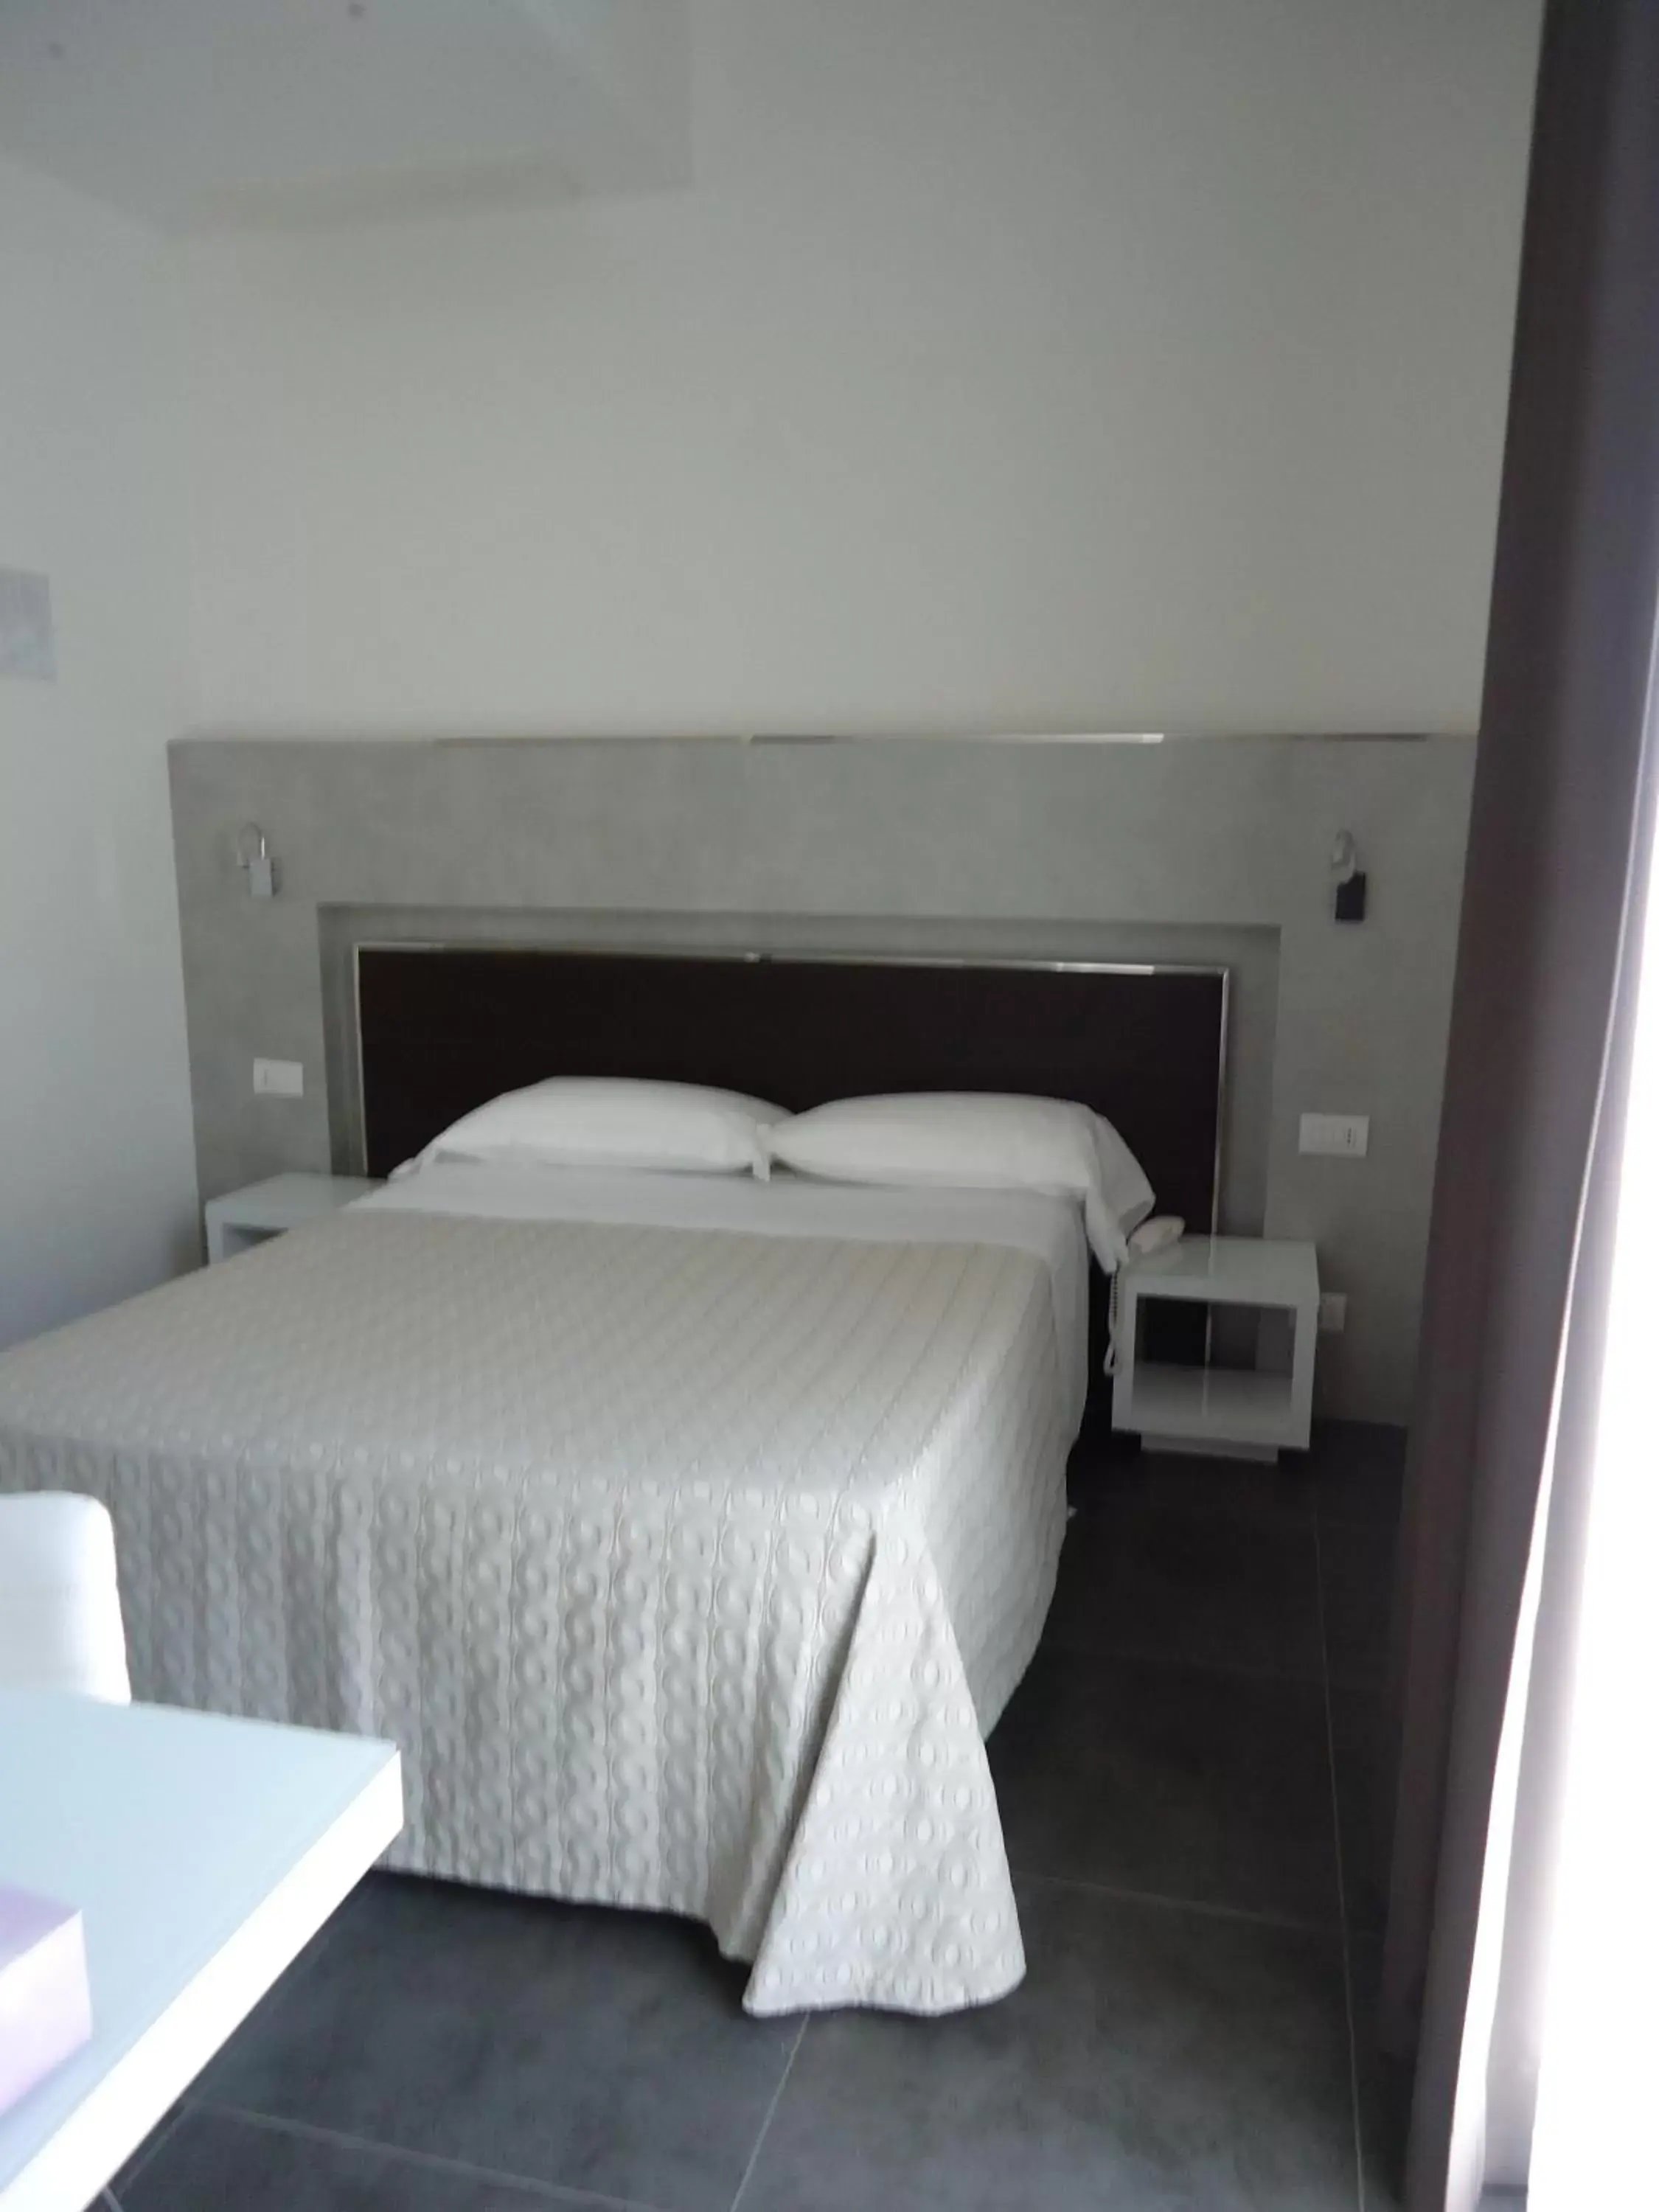 Bed in Baldinini Hotel